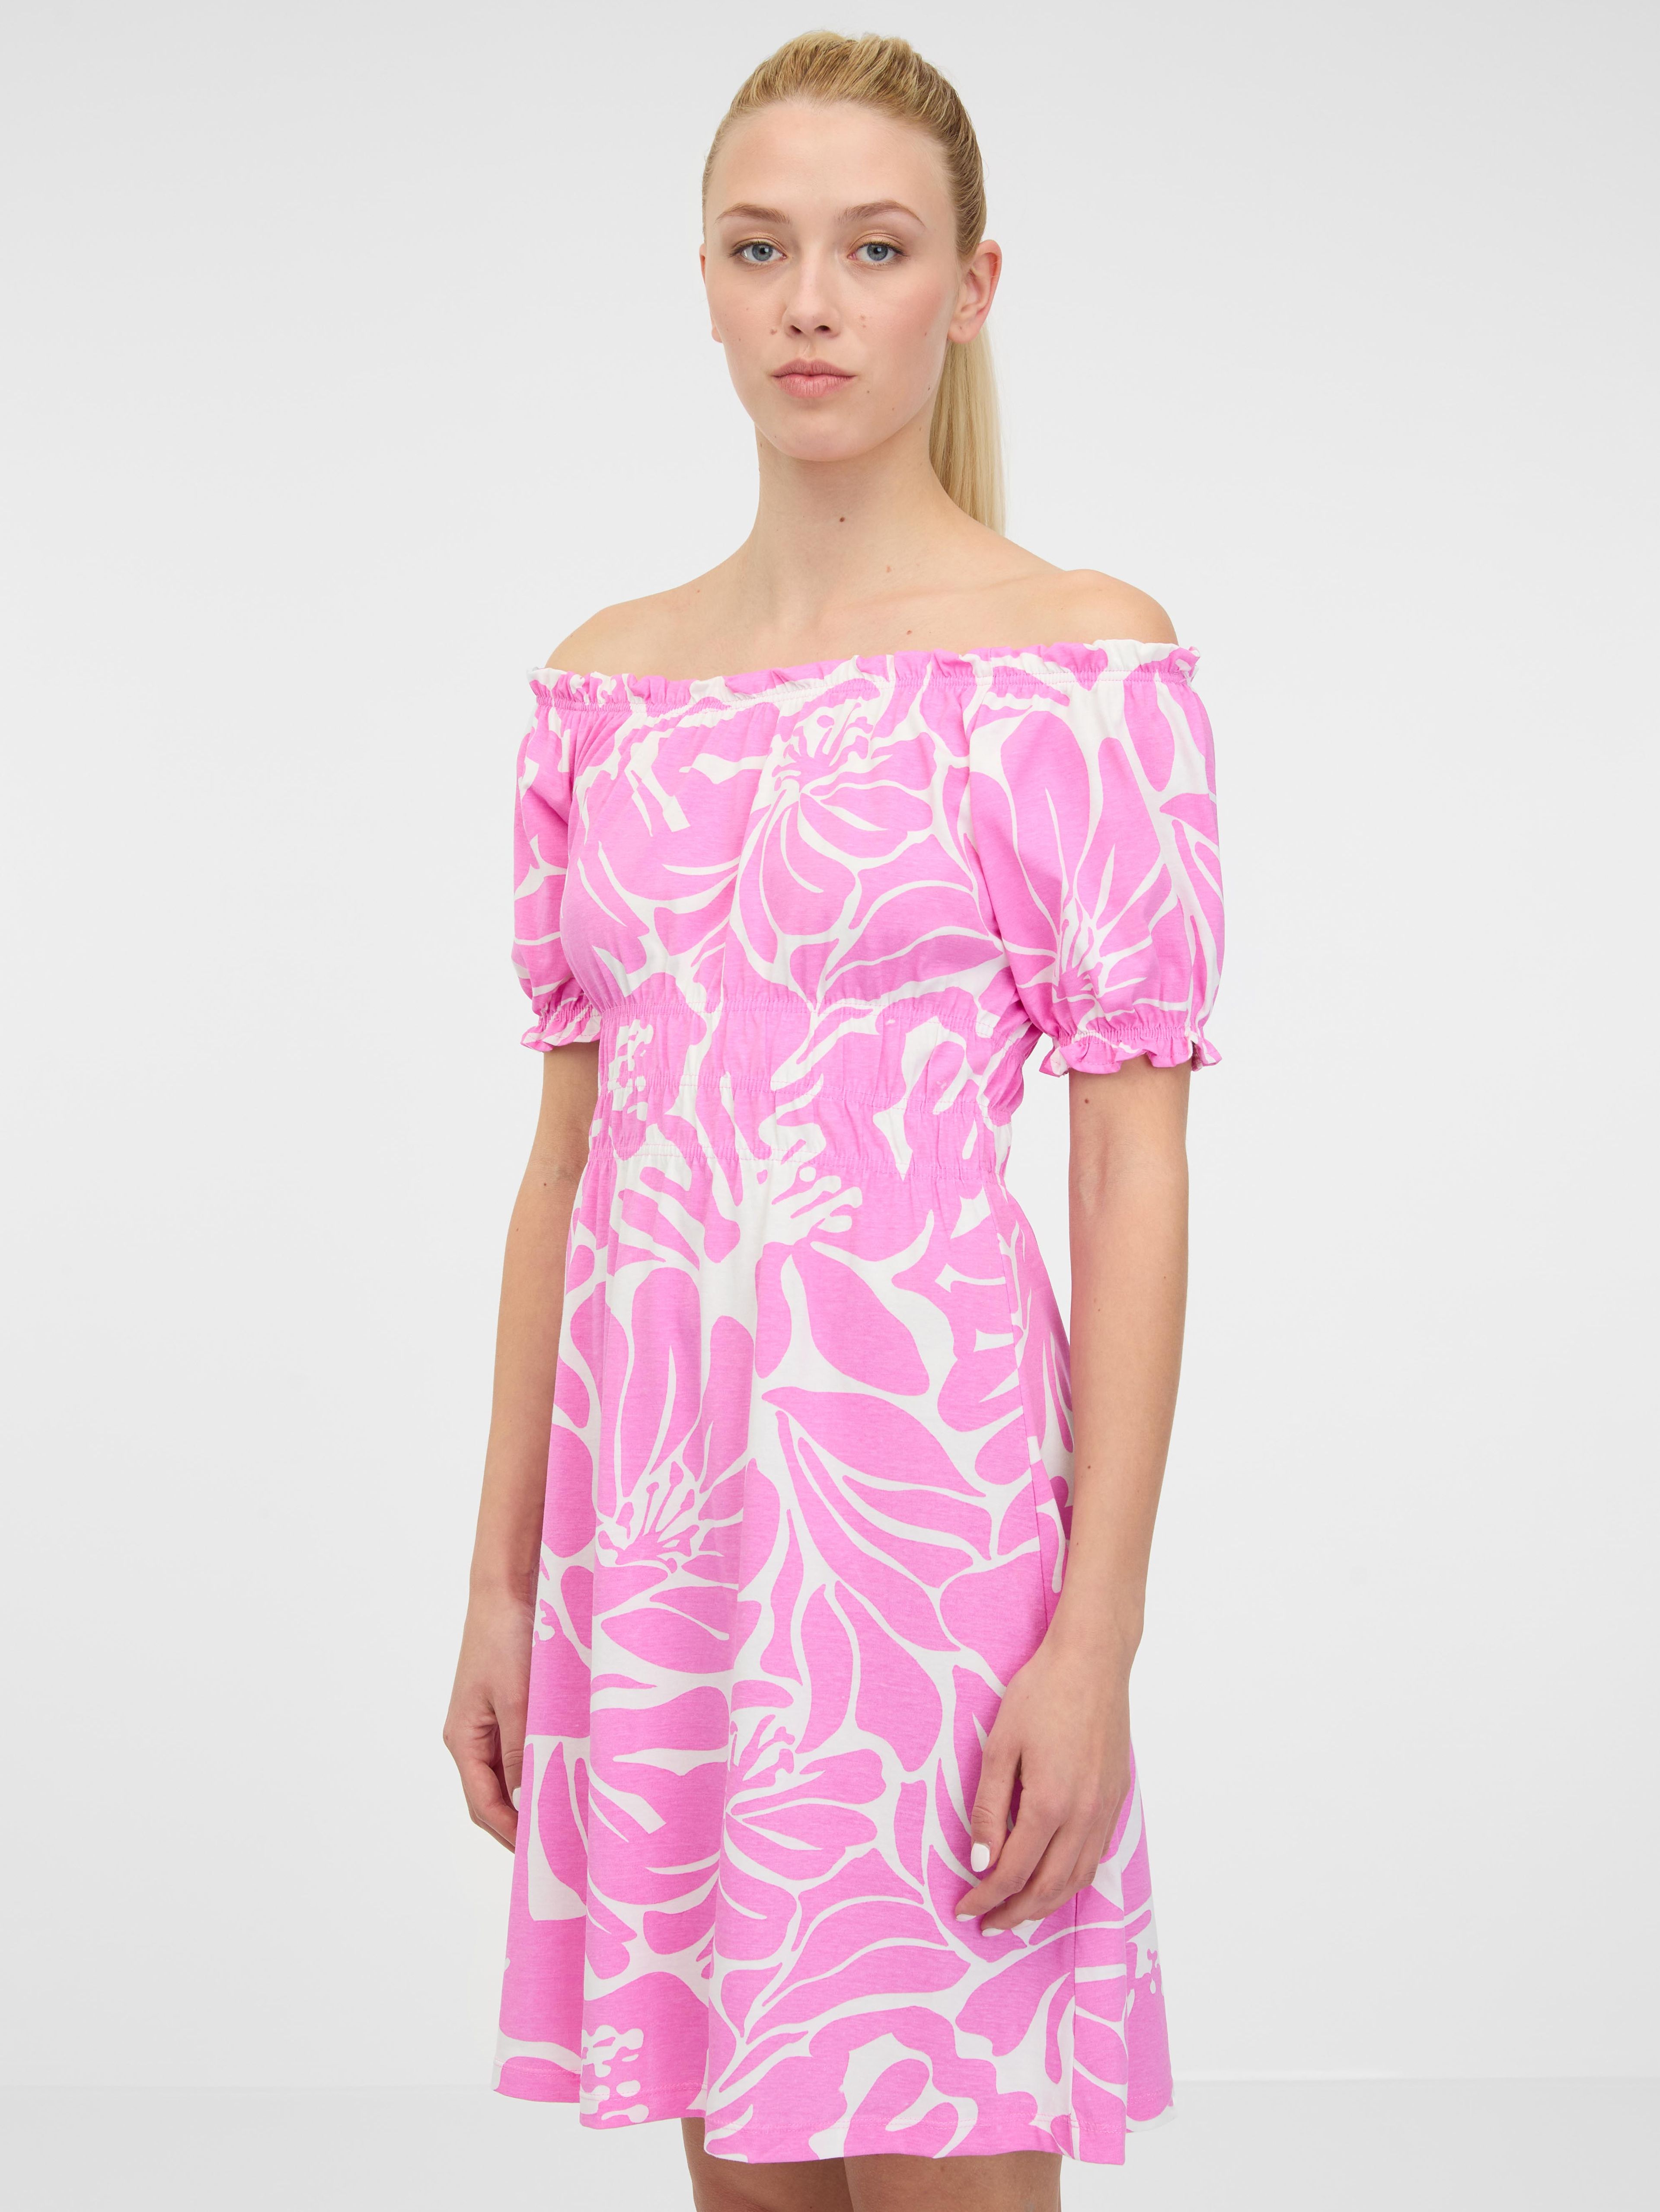 ORSAY világos rózsaszín térdig érő női ruha